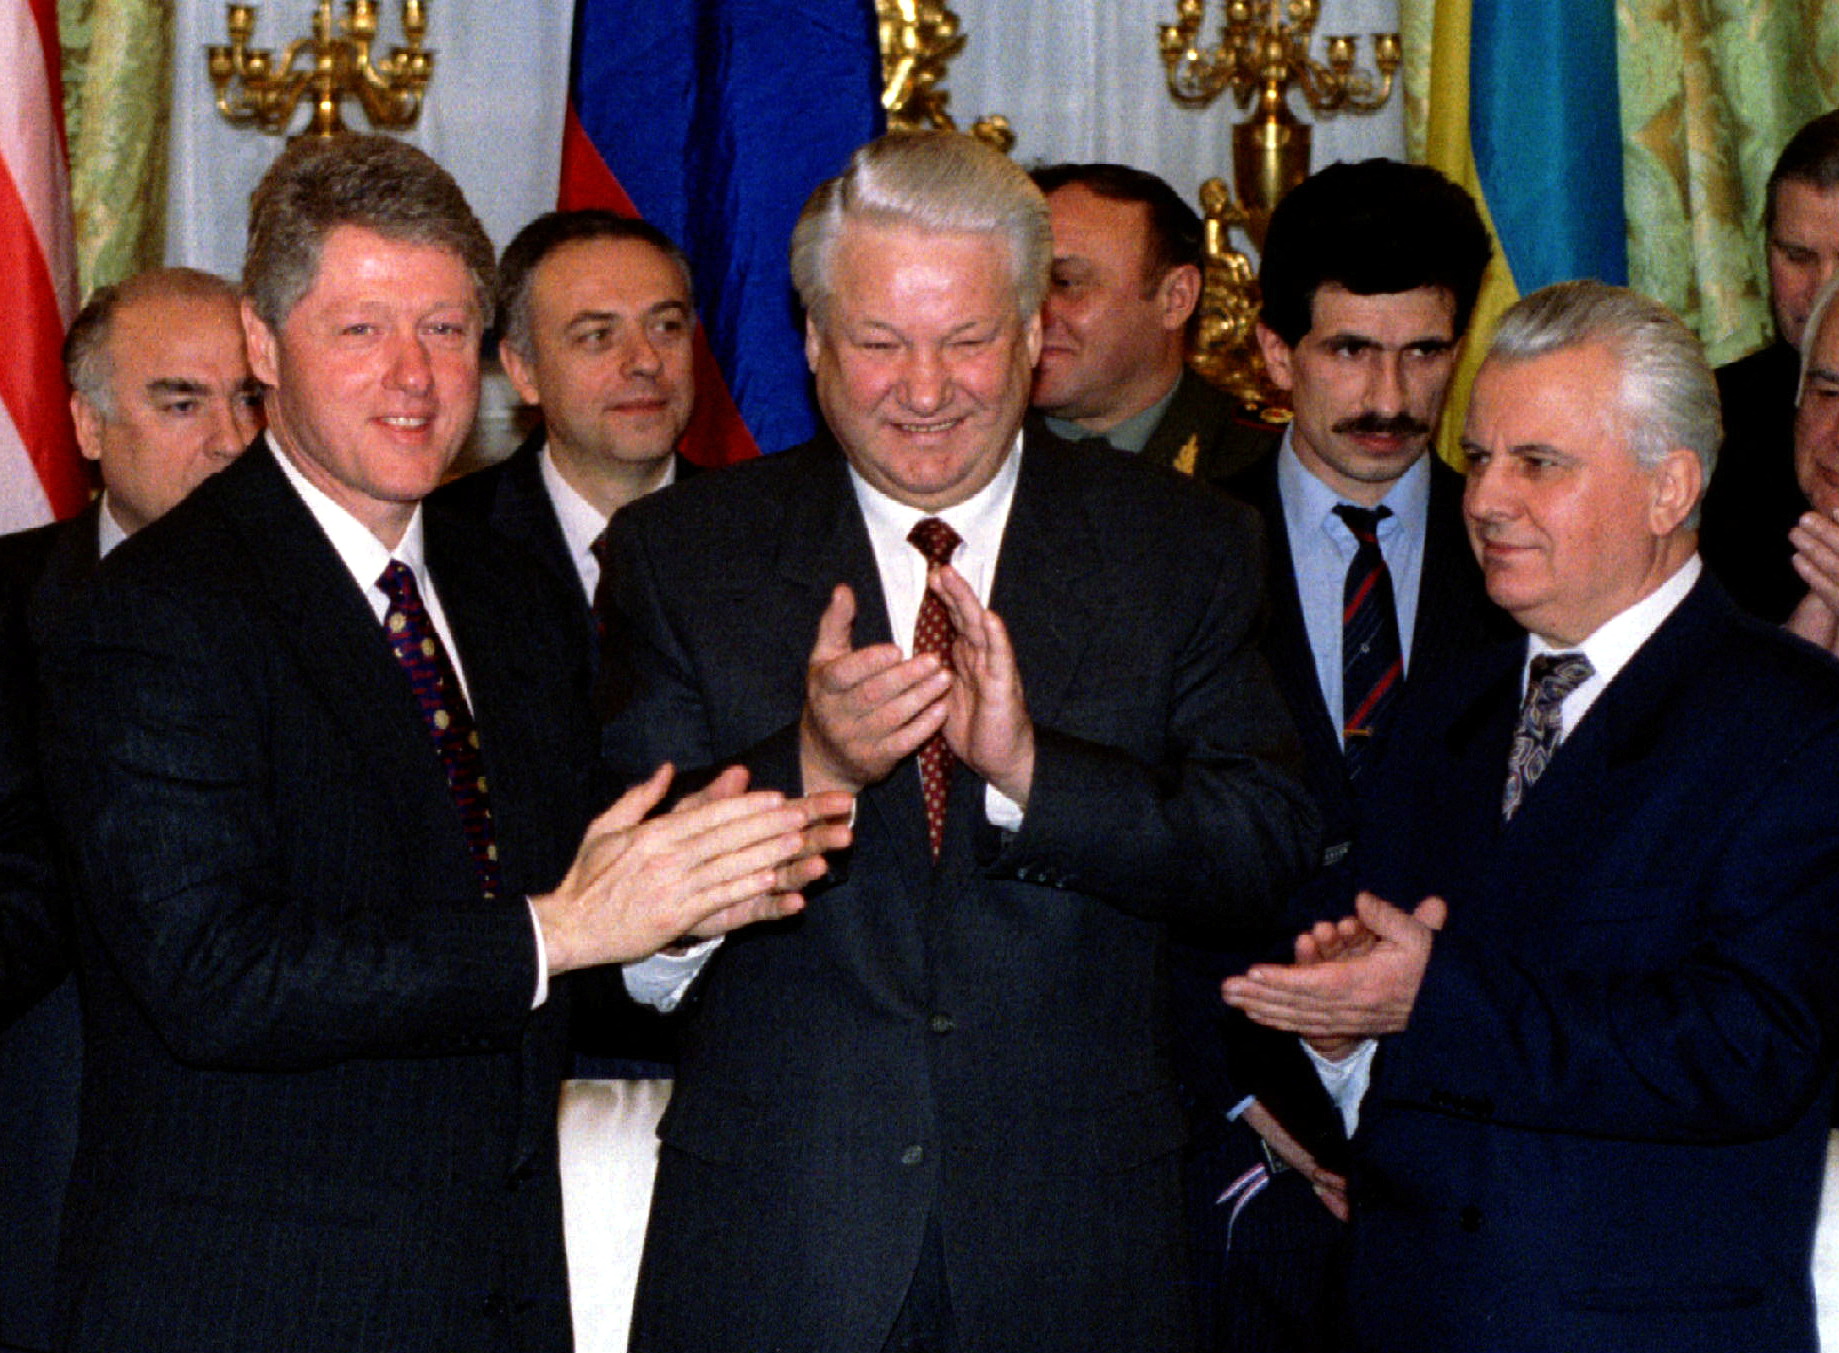 Білл Клінтон, Борис Єльцин та Леонід Кравчук на підписанні Будапештського меморандуму. Фото: REUTERS/Rick Wilking